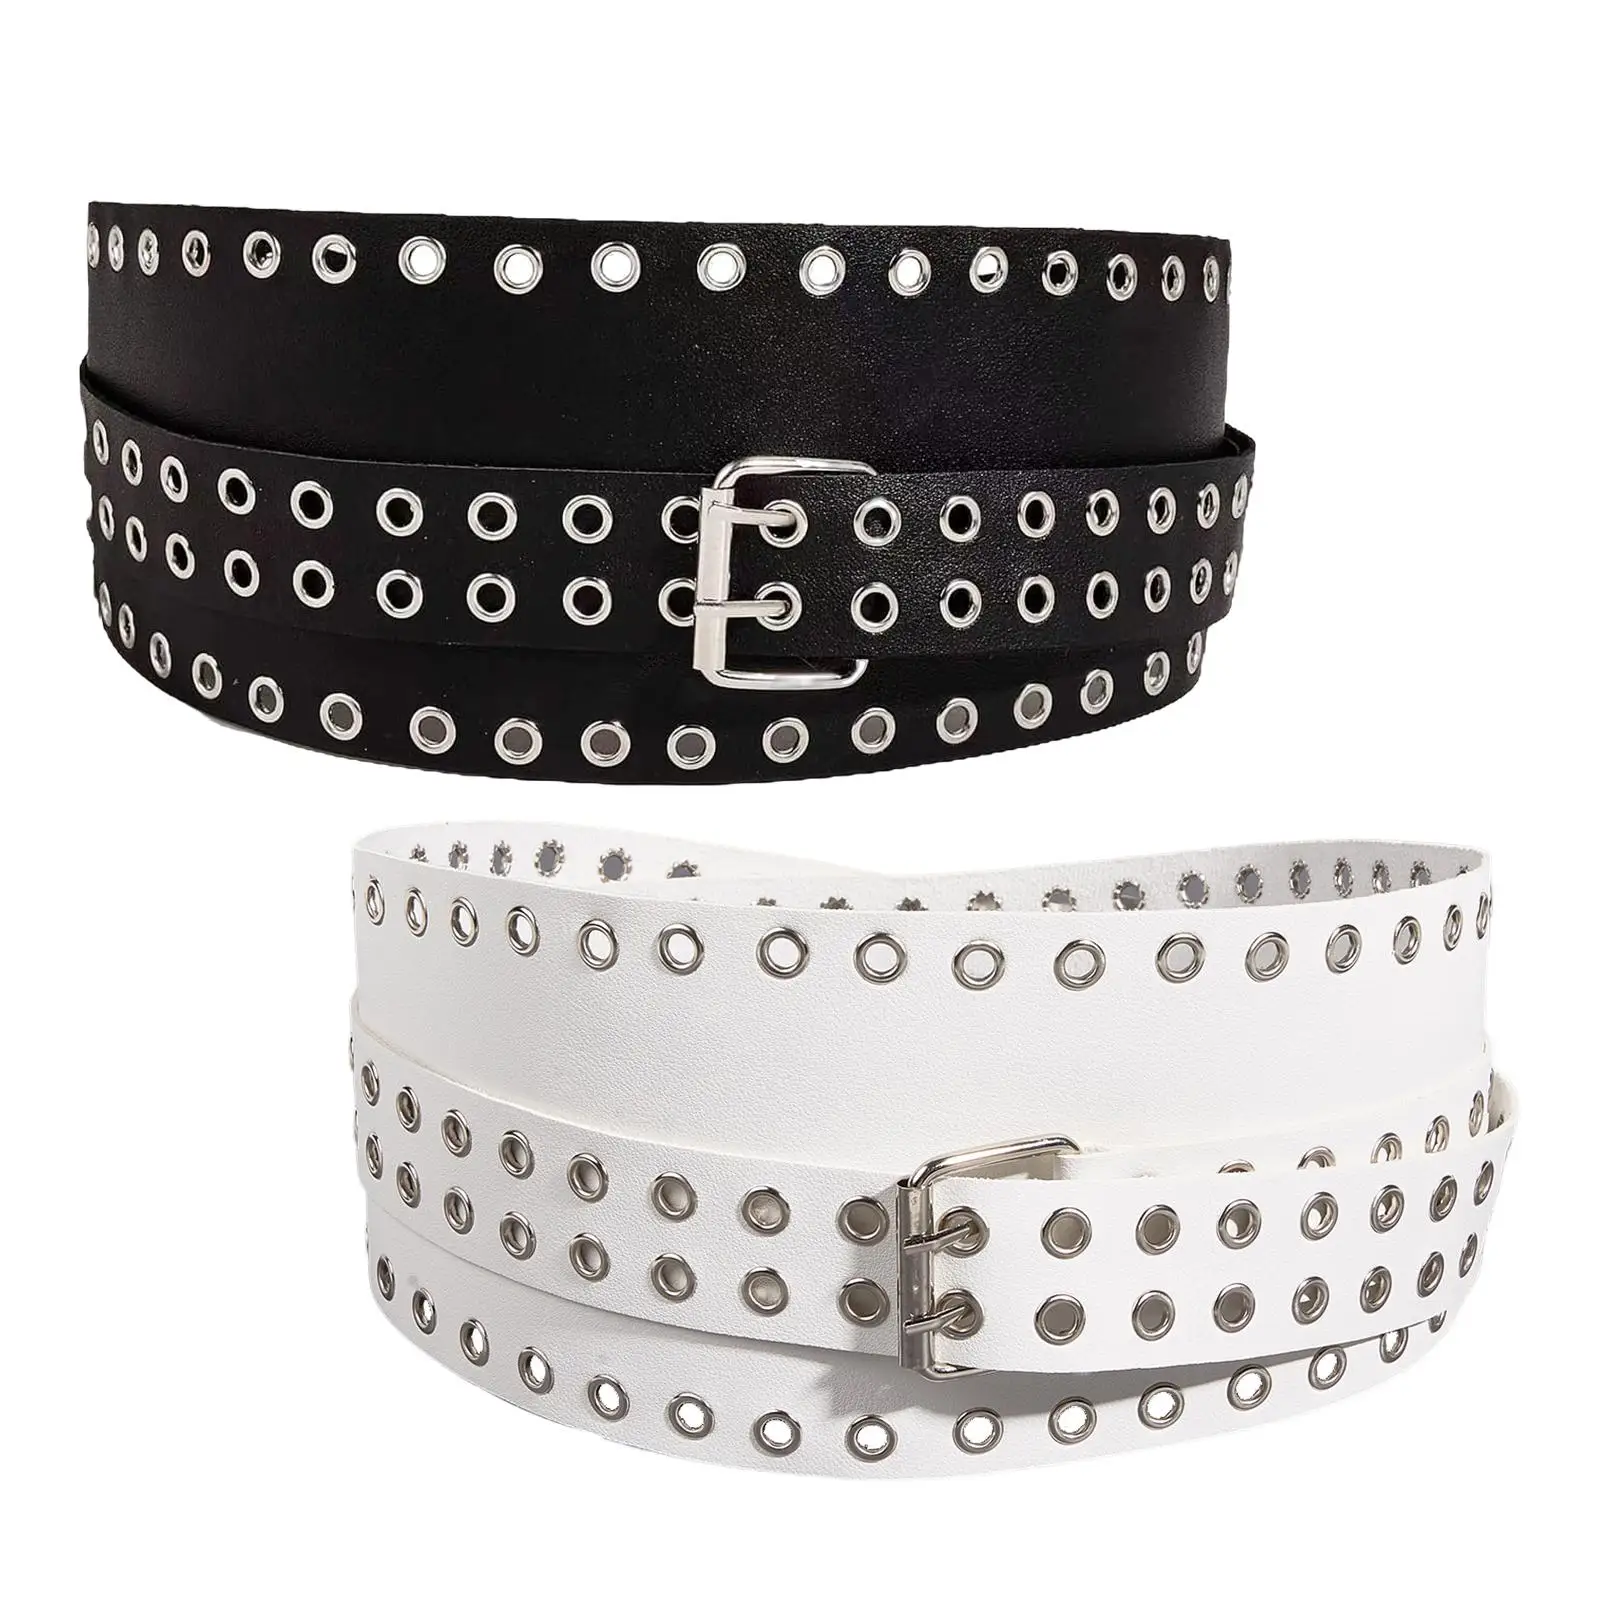 Fashion PU Leather Waist Belt Female Cinch Belt for Girls Skirt Parties